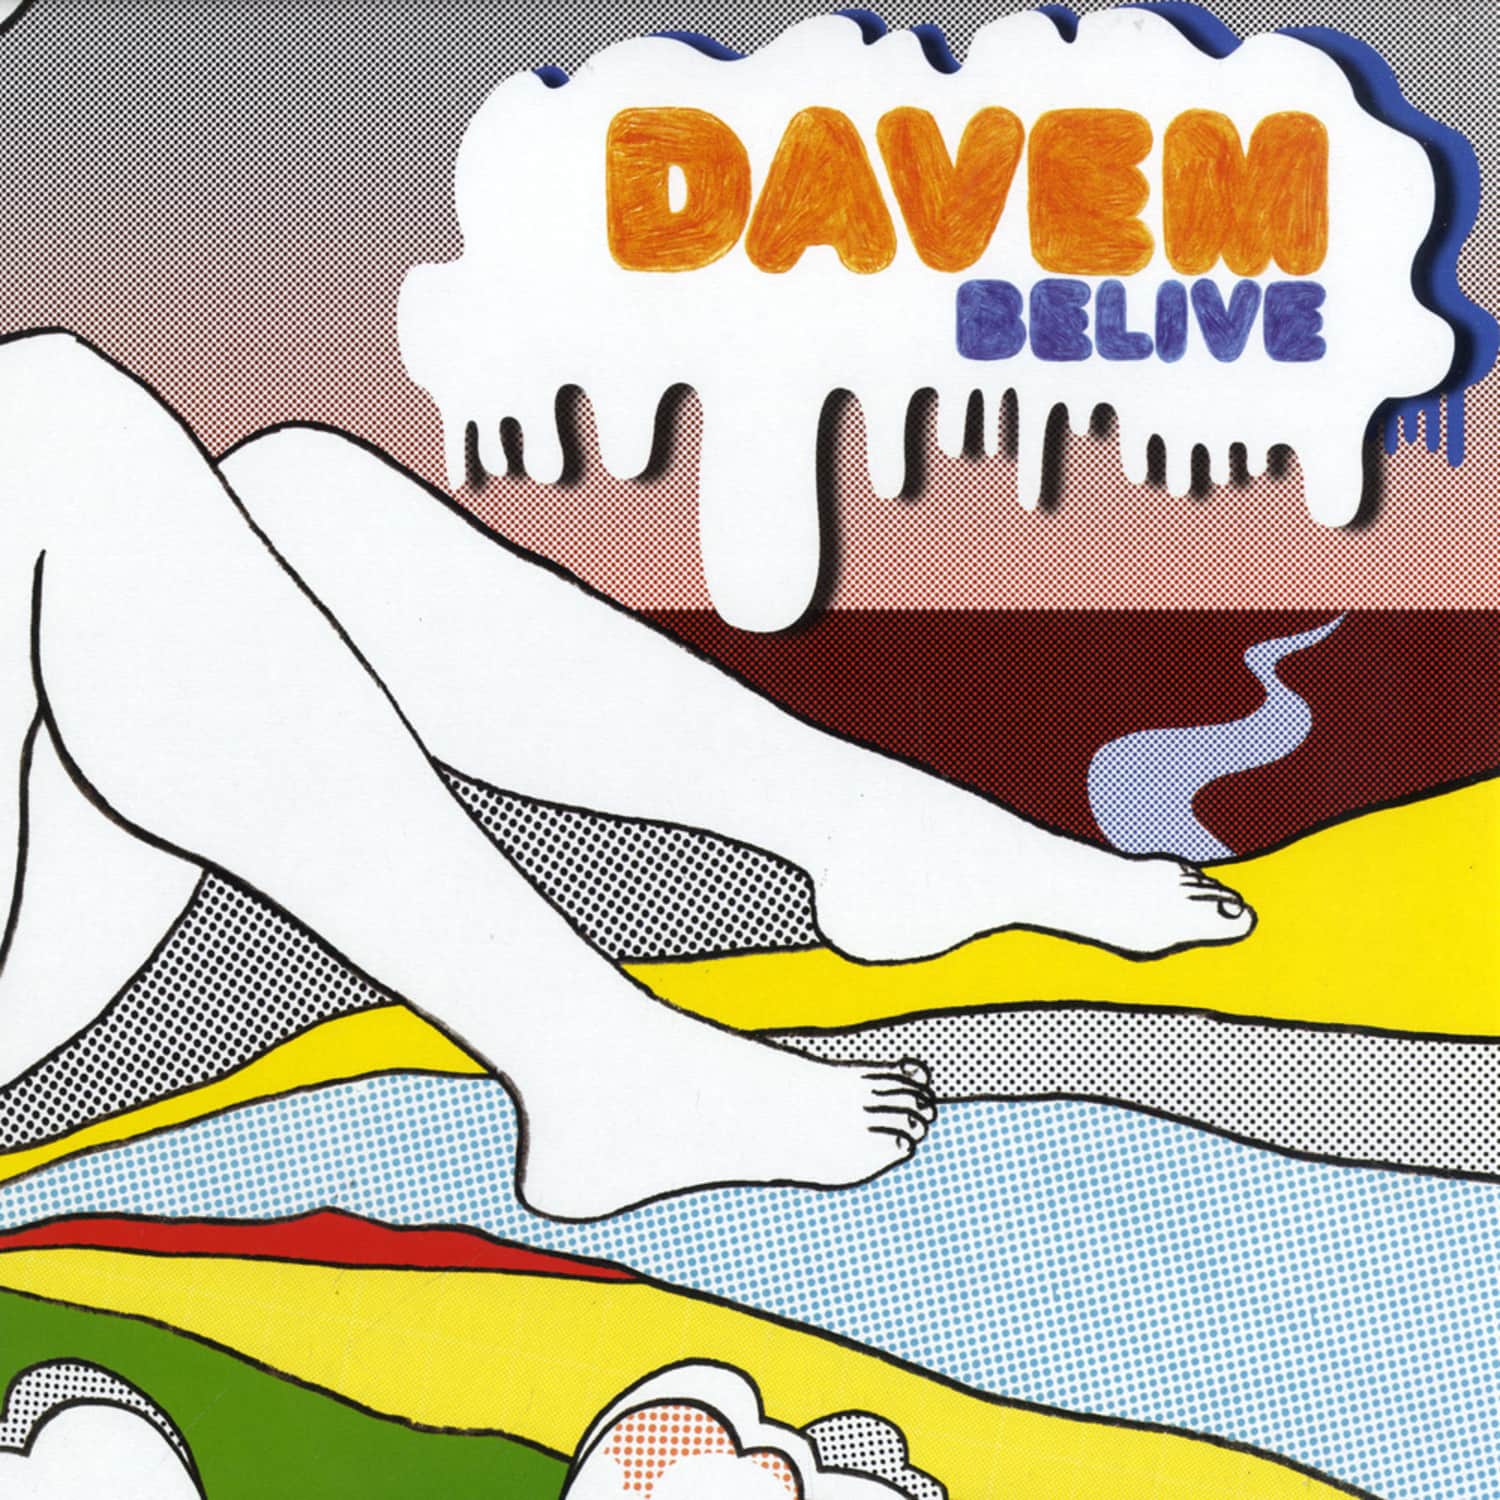 Davem - BELIEVE EP